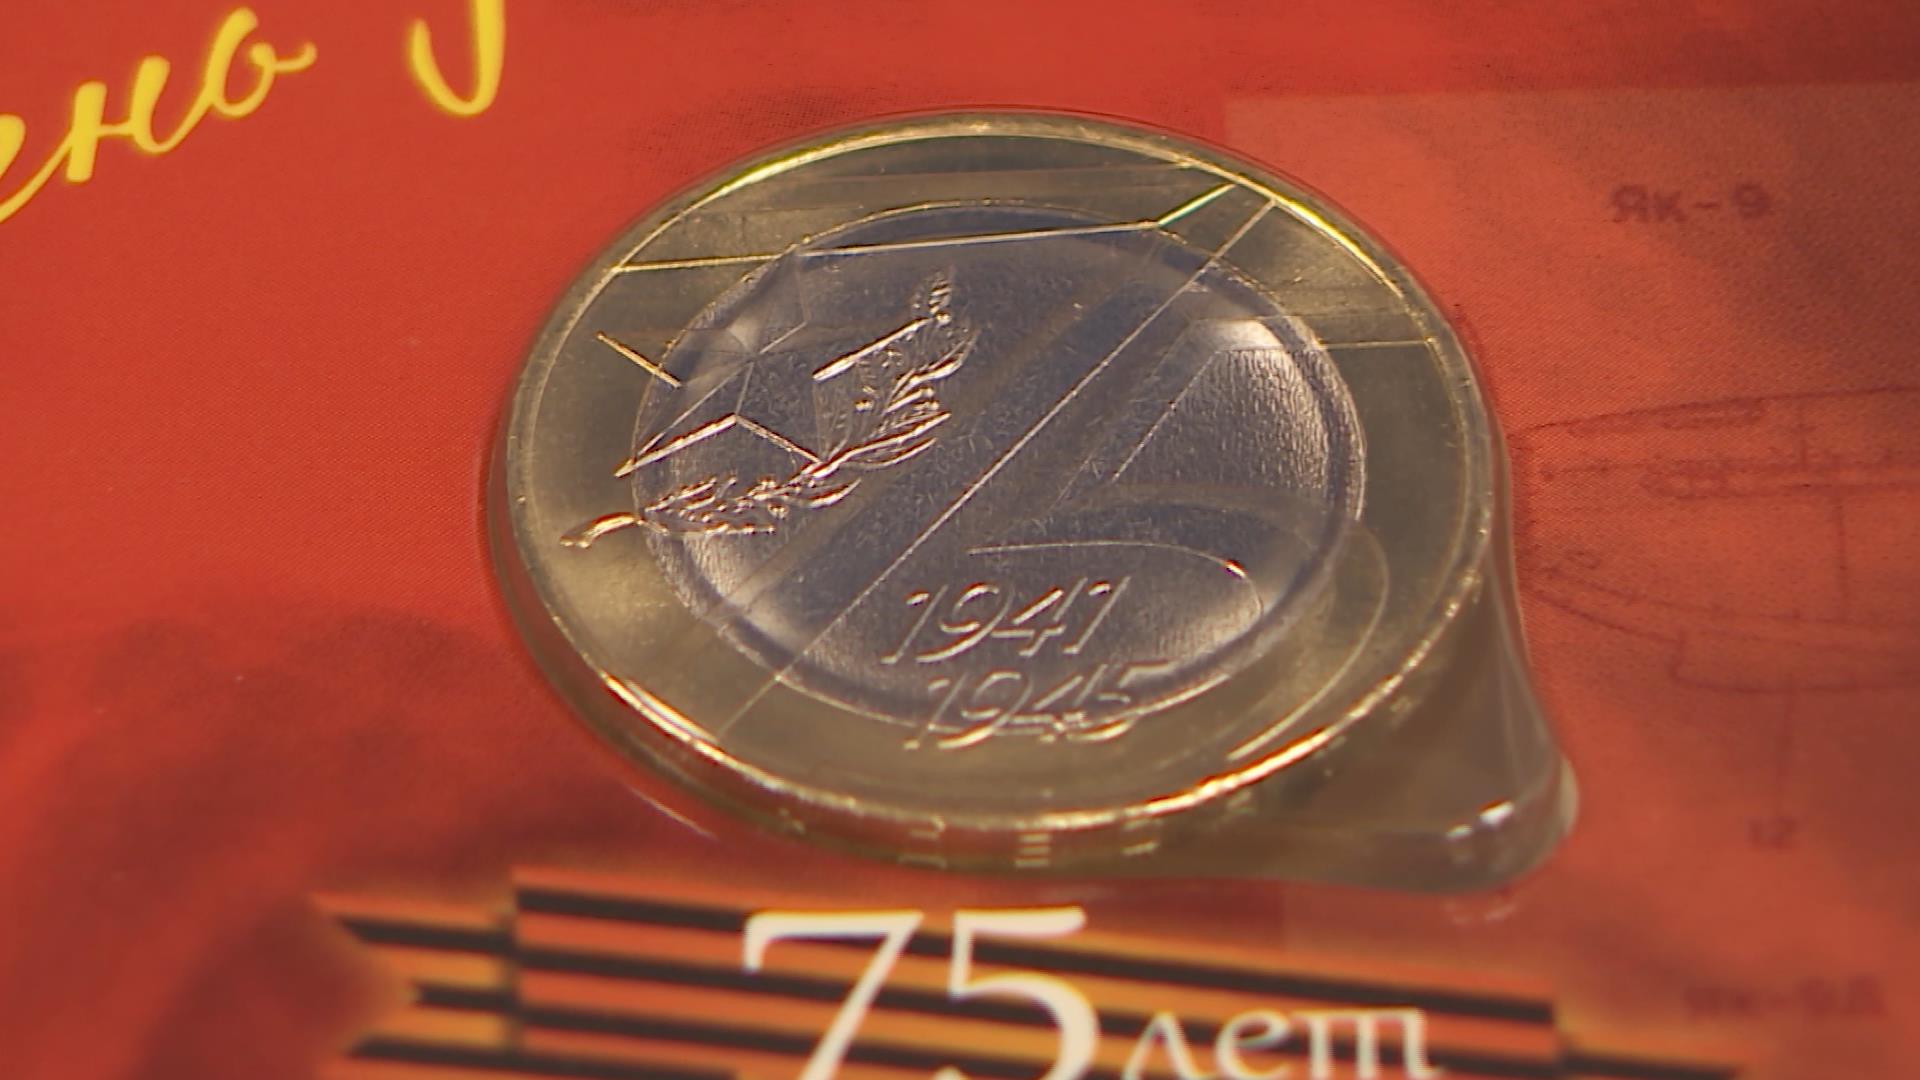 В Кострому поступили памятные монеты, посвящённые 75-летию Победы